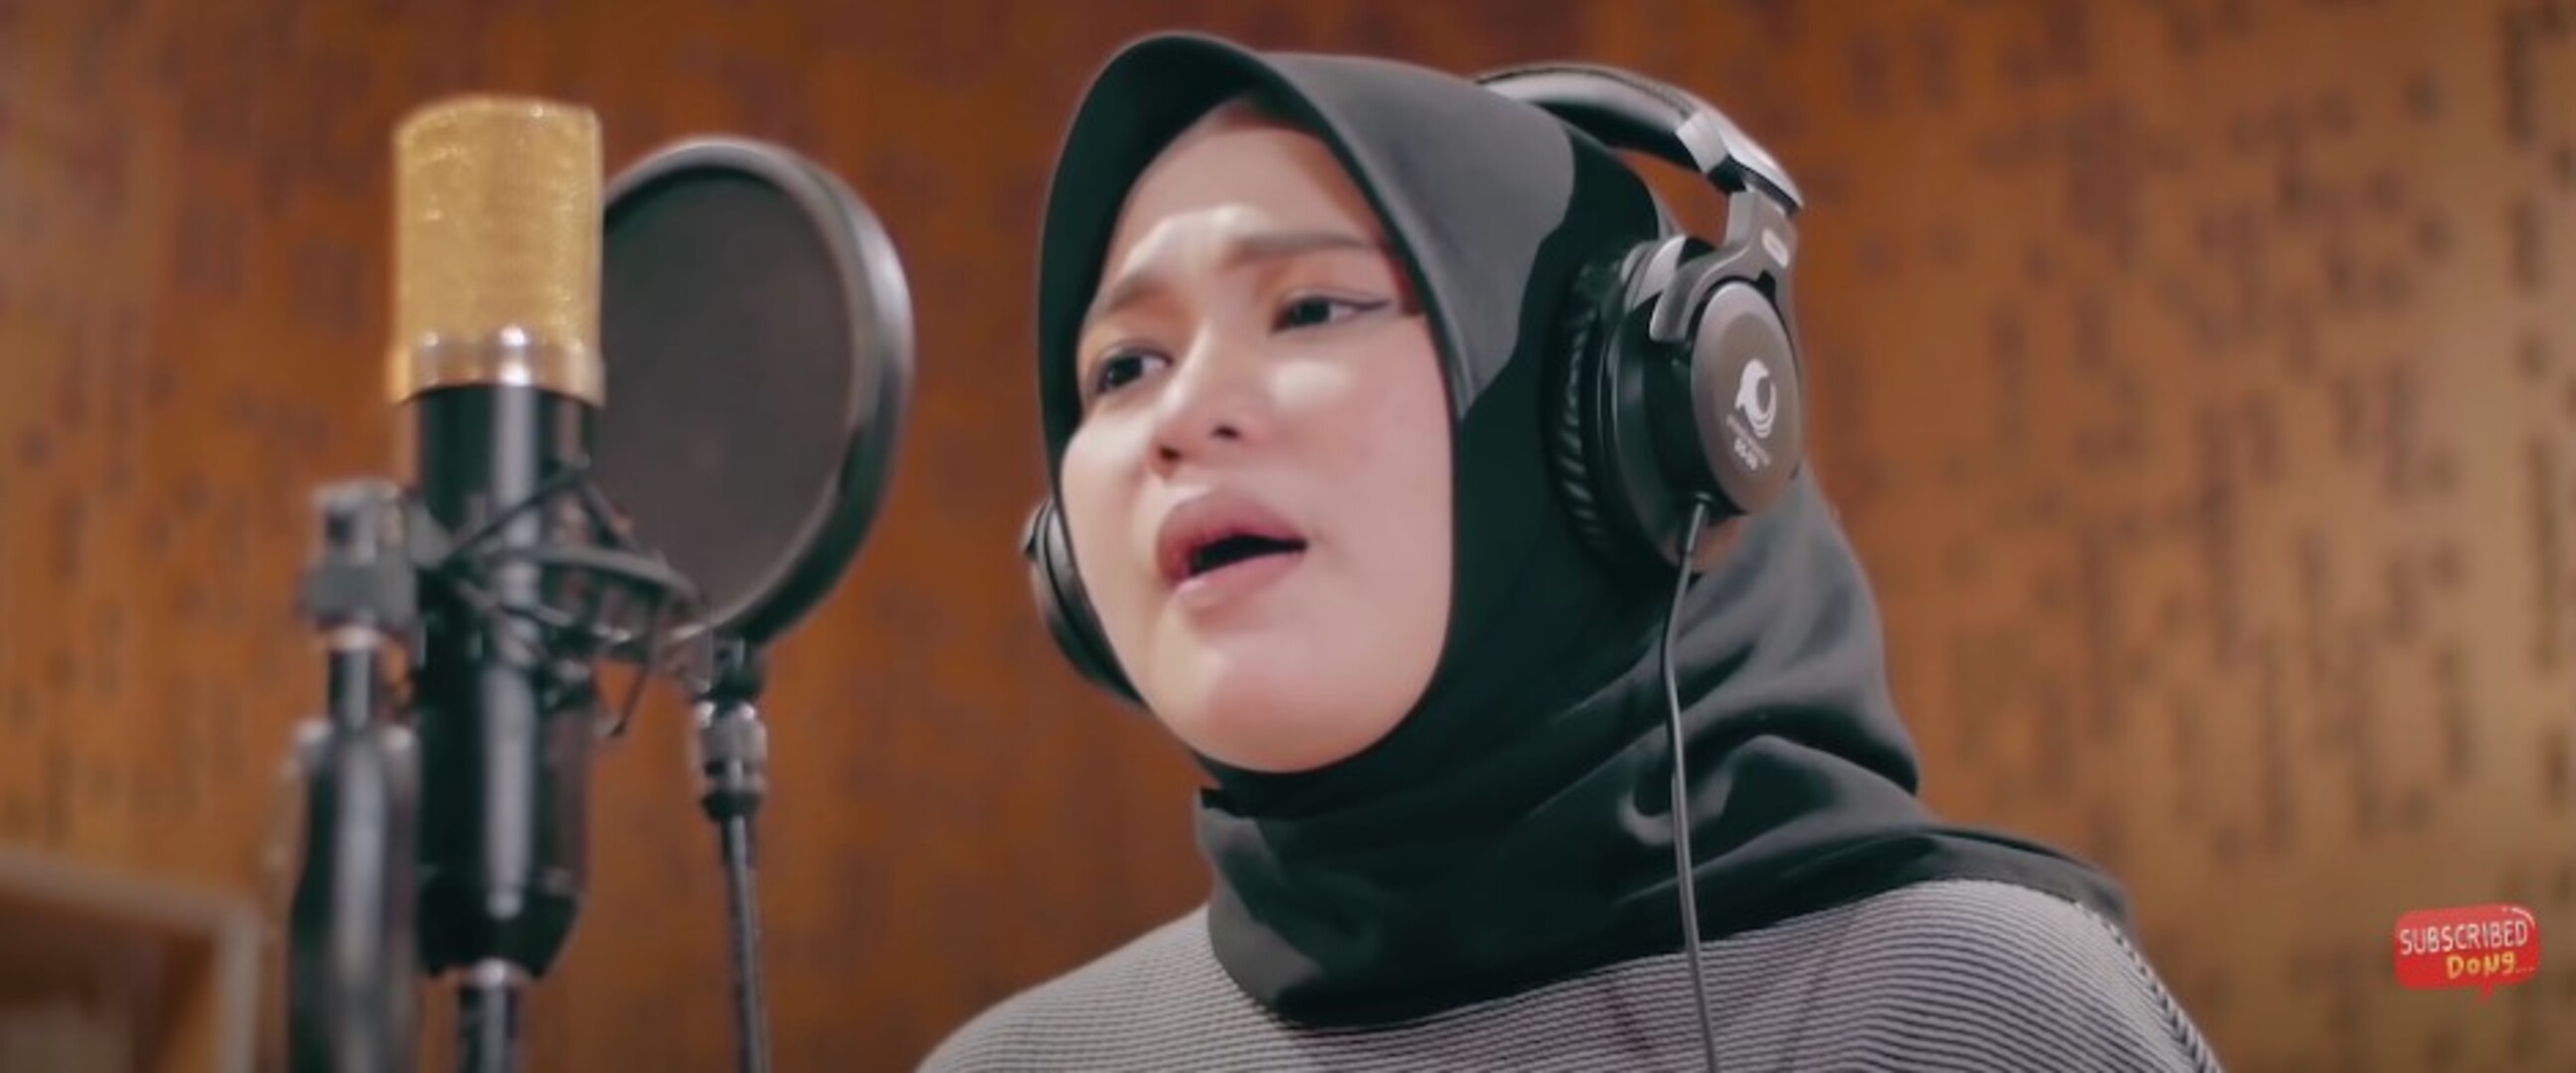 Lirik Muhasabah Cinta dinyanyikan ulang Anisa Rahman, viral di TikTok